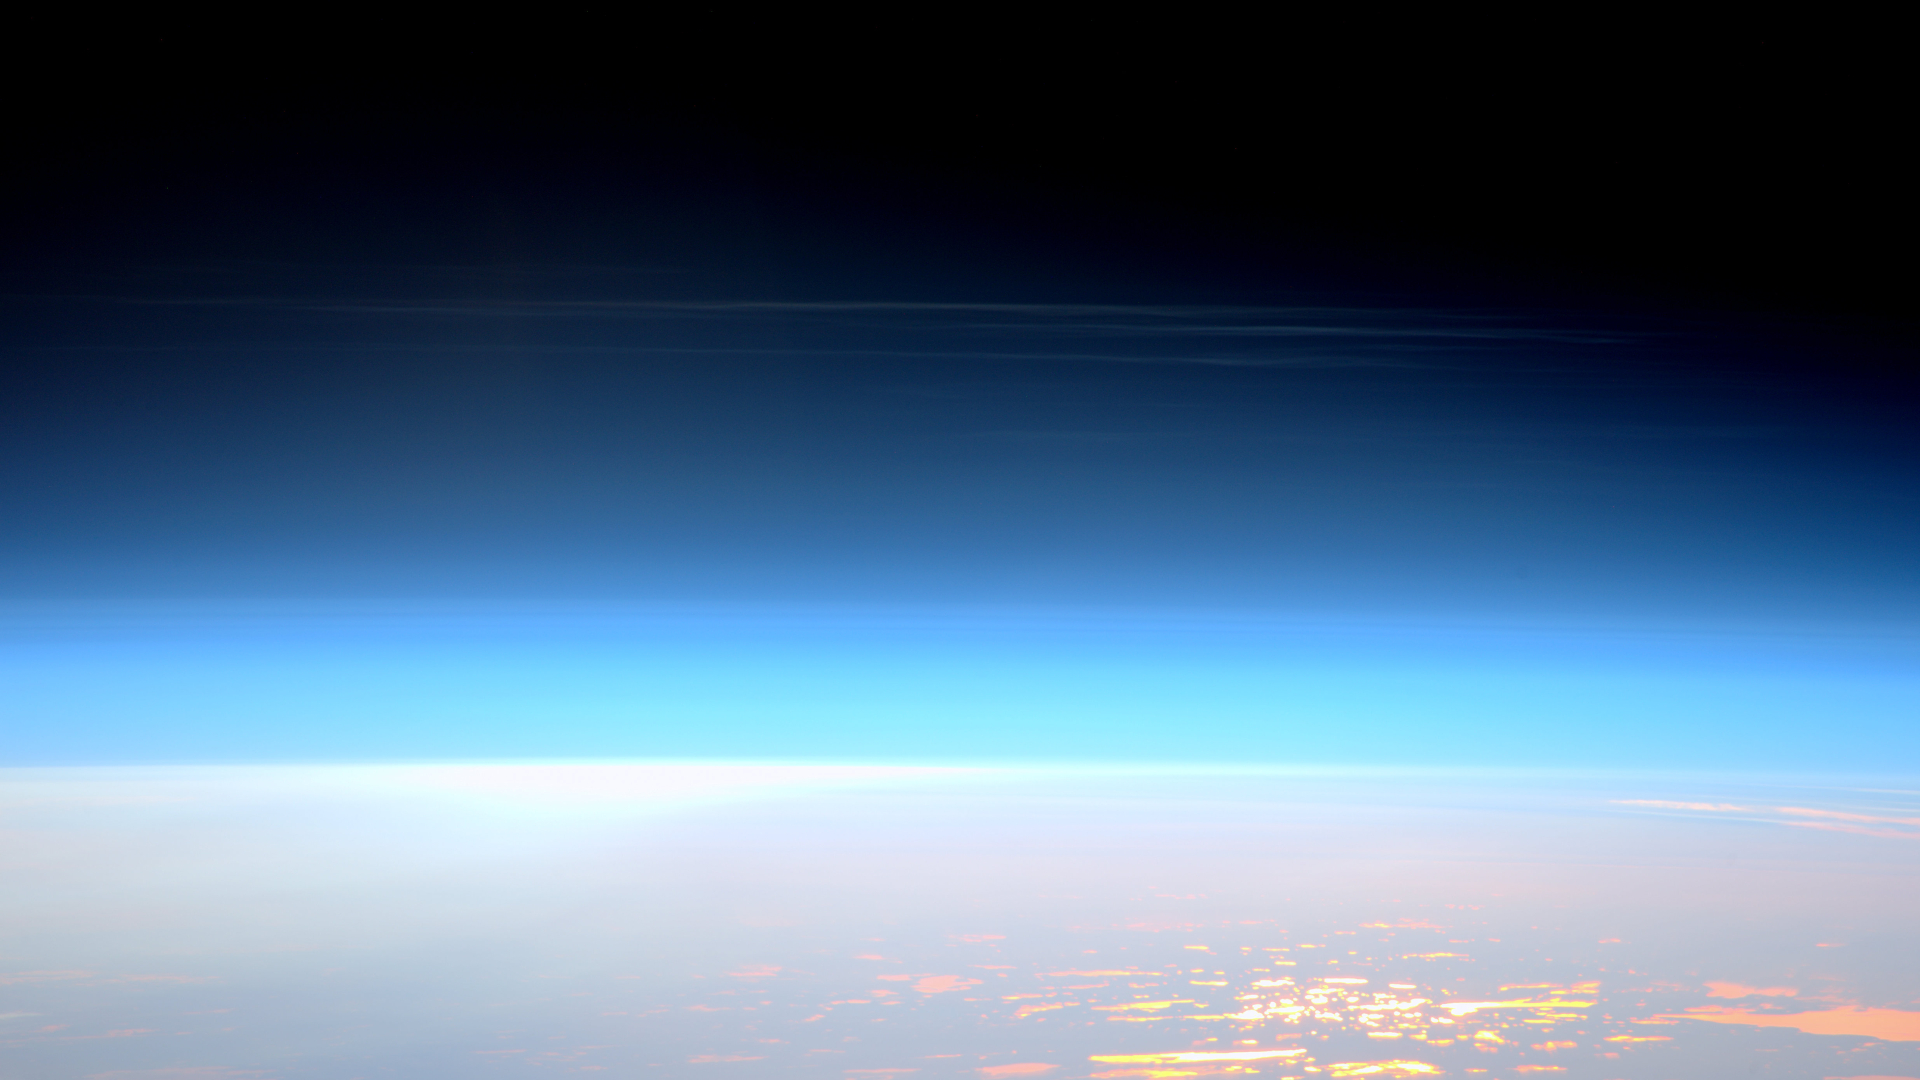 Dunne witte piekerige wolken hoog in de wazige blauwe atmosfeer van de aarde met het aardoppervlak eronder.